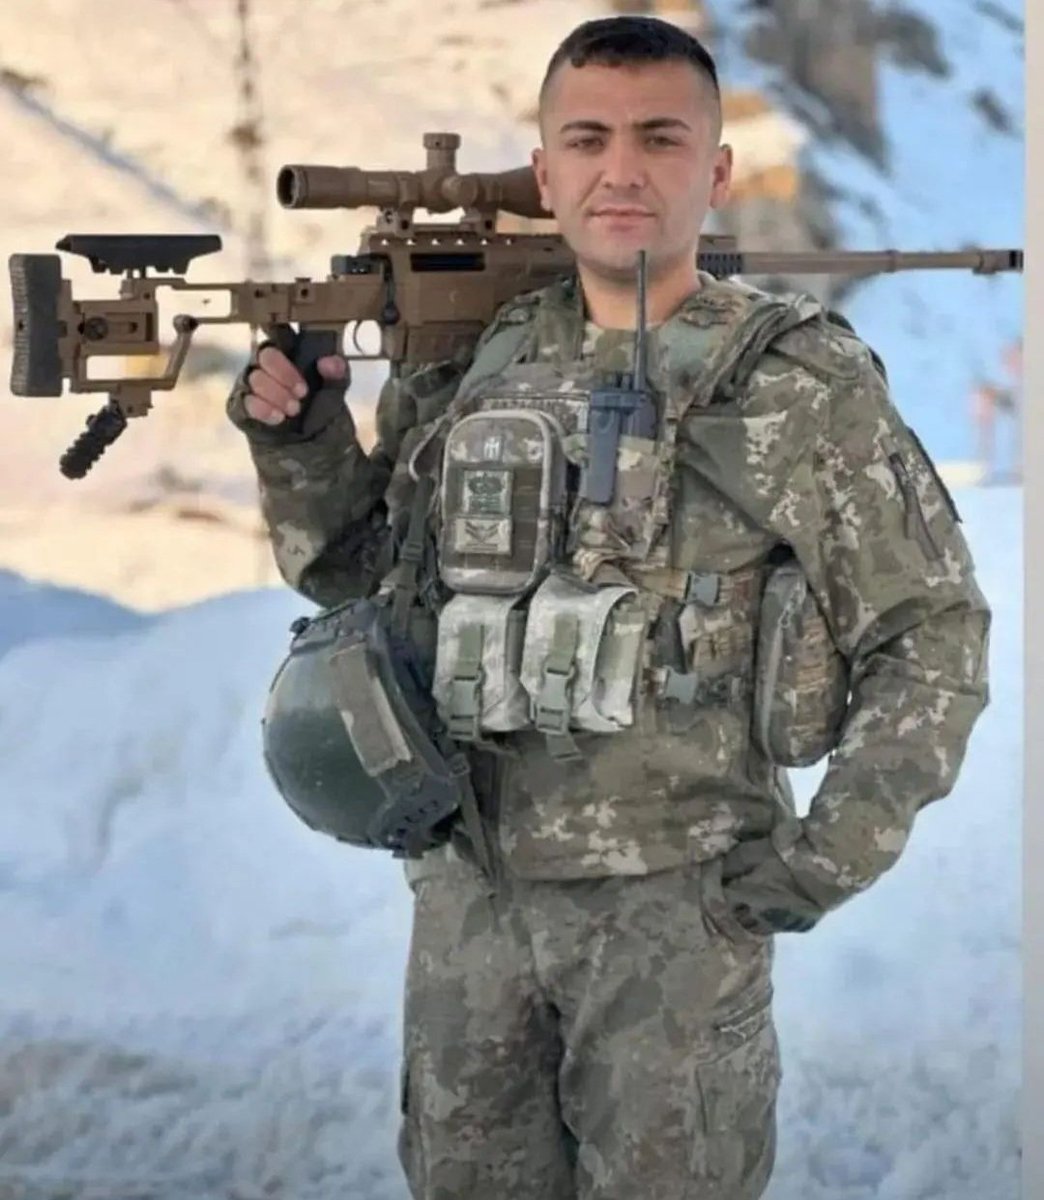 Kuzey Irak'ta görev yapan Hatay Kırıkhanlı kahraman askerimiz Uzman Çavuş Uğur Sazağan şehit oldu.

Allah Rahmet, ailesine ve sevenlerine sabr cemil versin. Mekanı cennet olsun.

Milletimizin başı sağolsun 
#Şehidinvartürkiye